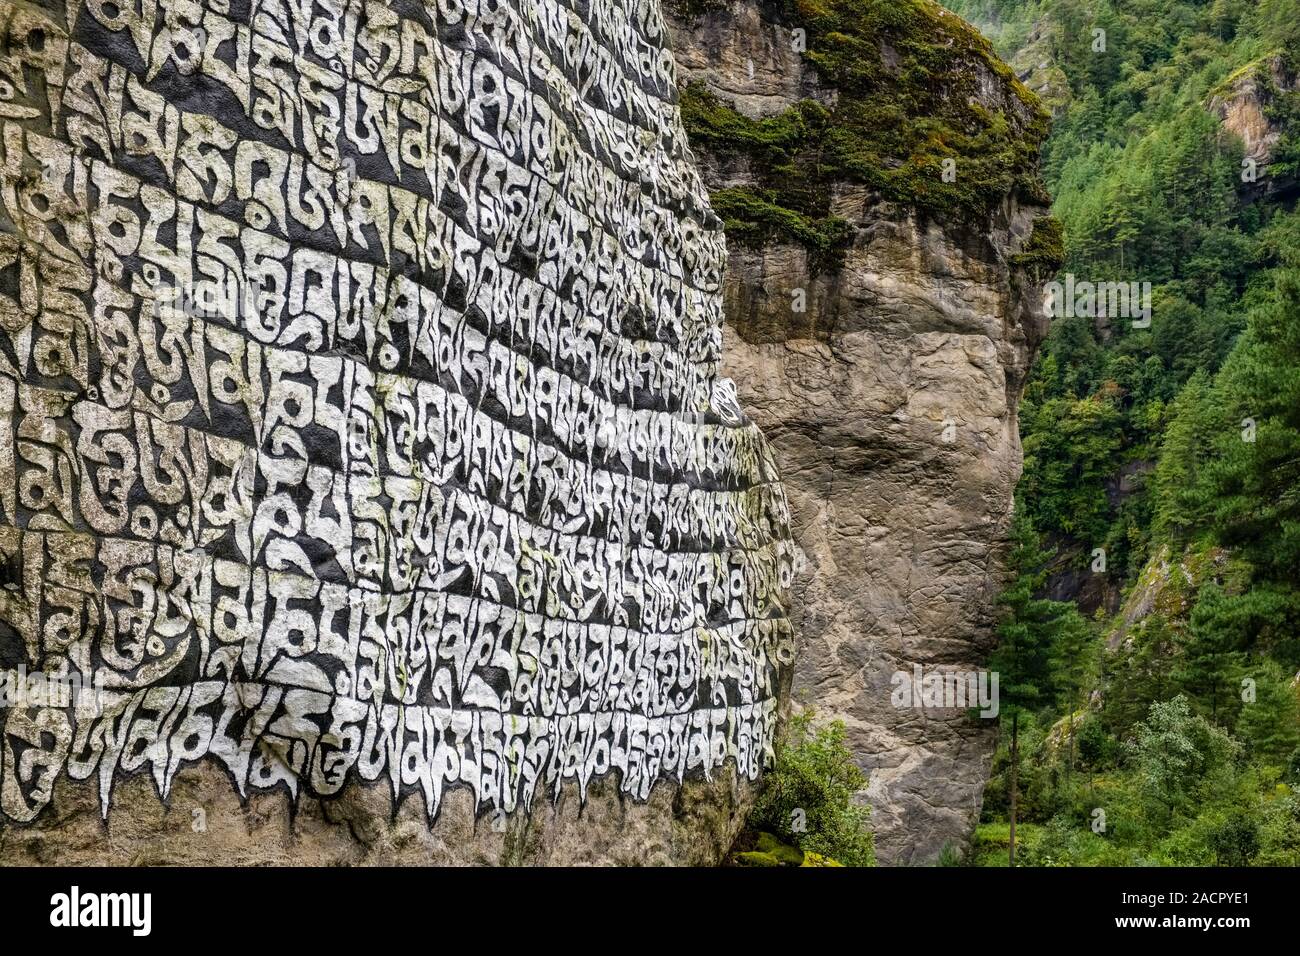 Grandi Mani di pietra con inciso il mantra tibetano OM MANI PADME HUM, situato all'entrata del villaggio Foto Stock